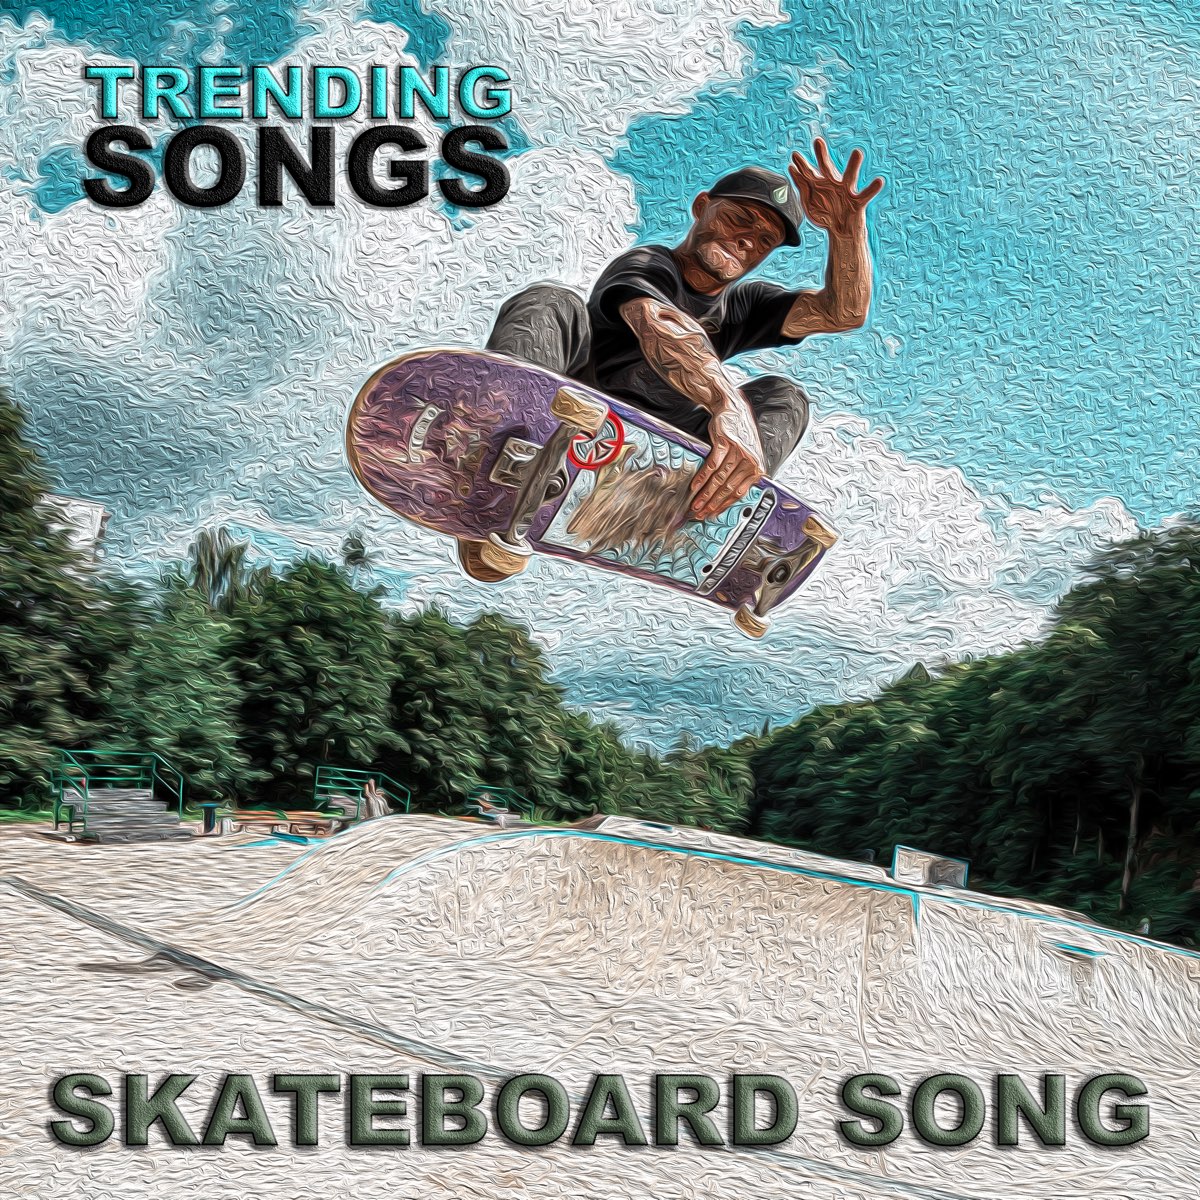 Skateboard Song - Single by Trending Songs on Apple Music